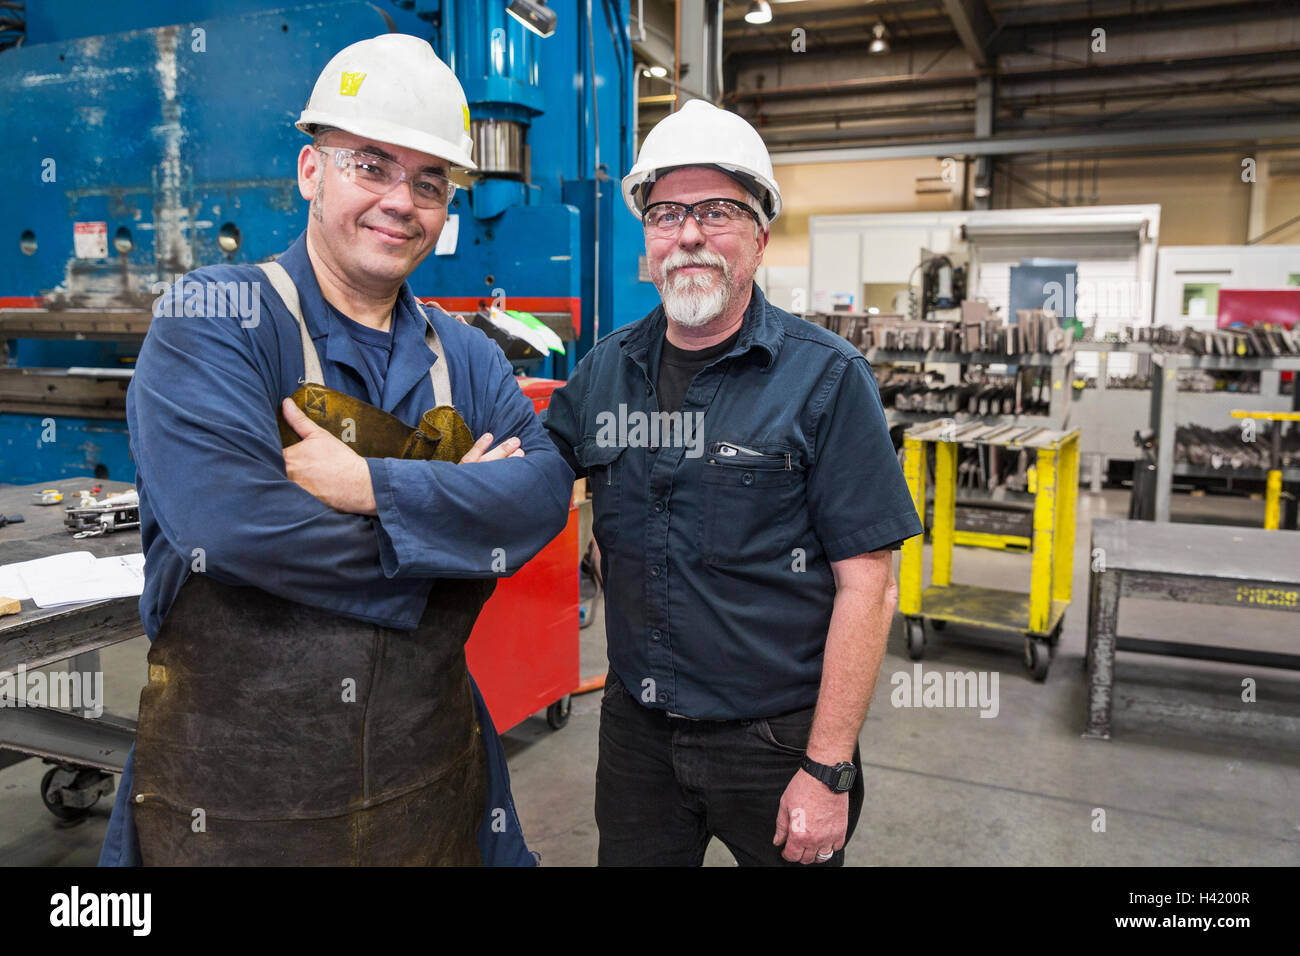 Los trabajadores sonriente posando en la fábrica. Foto de stock